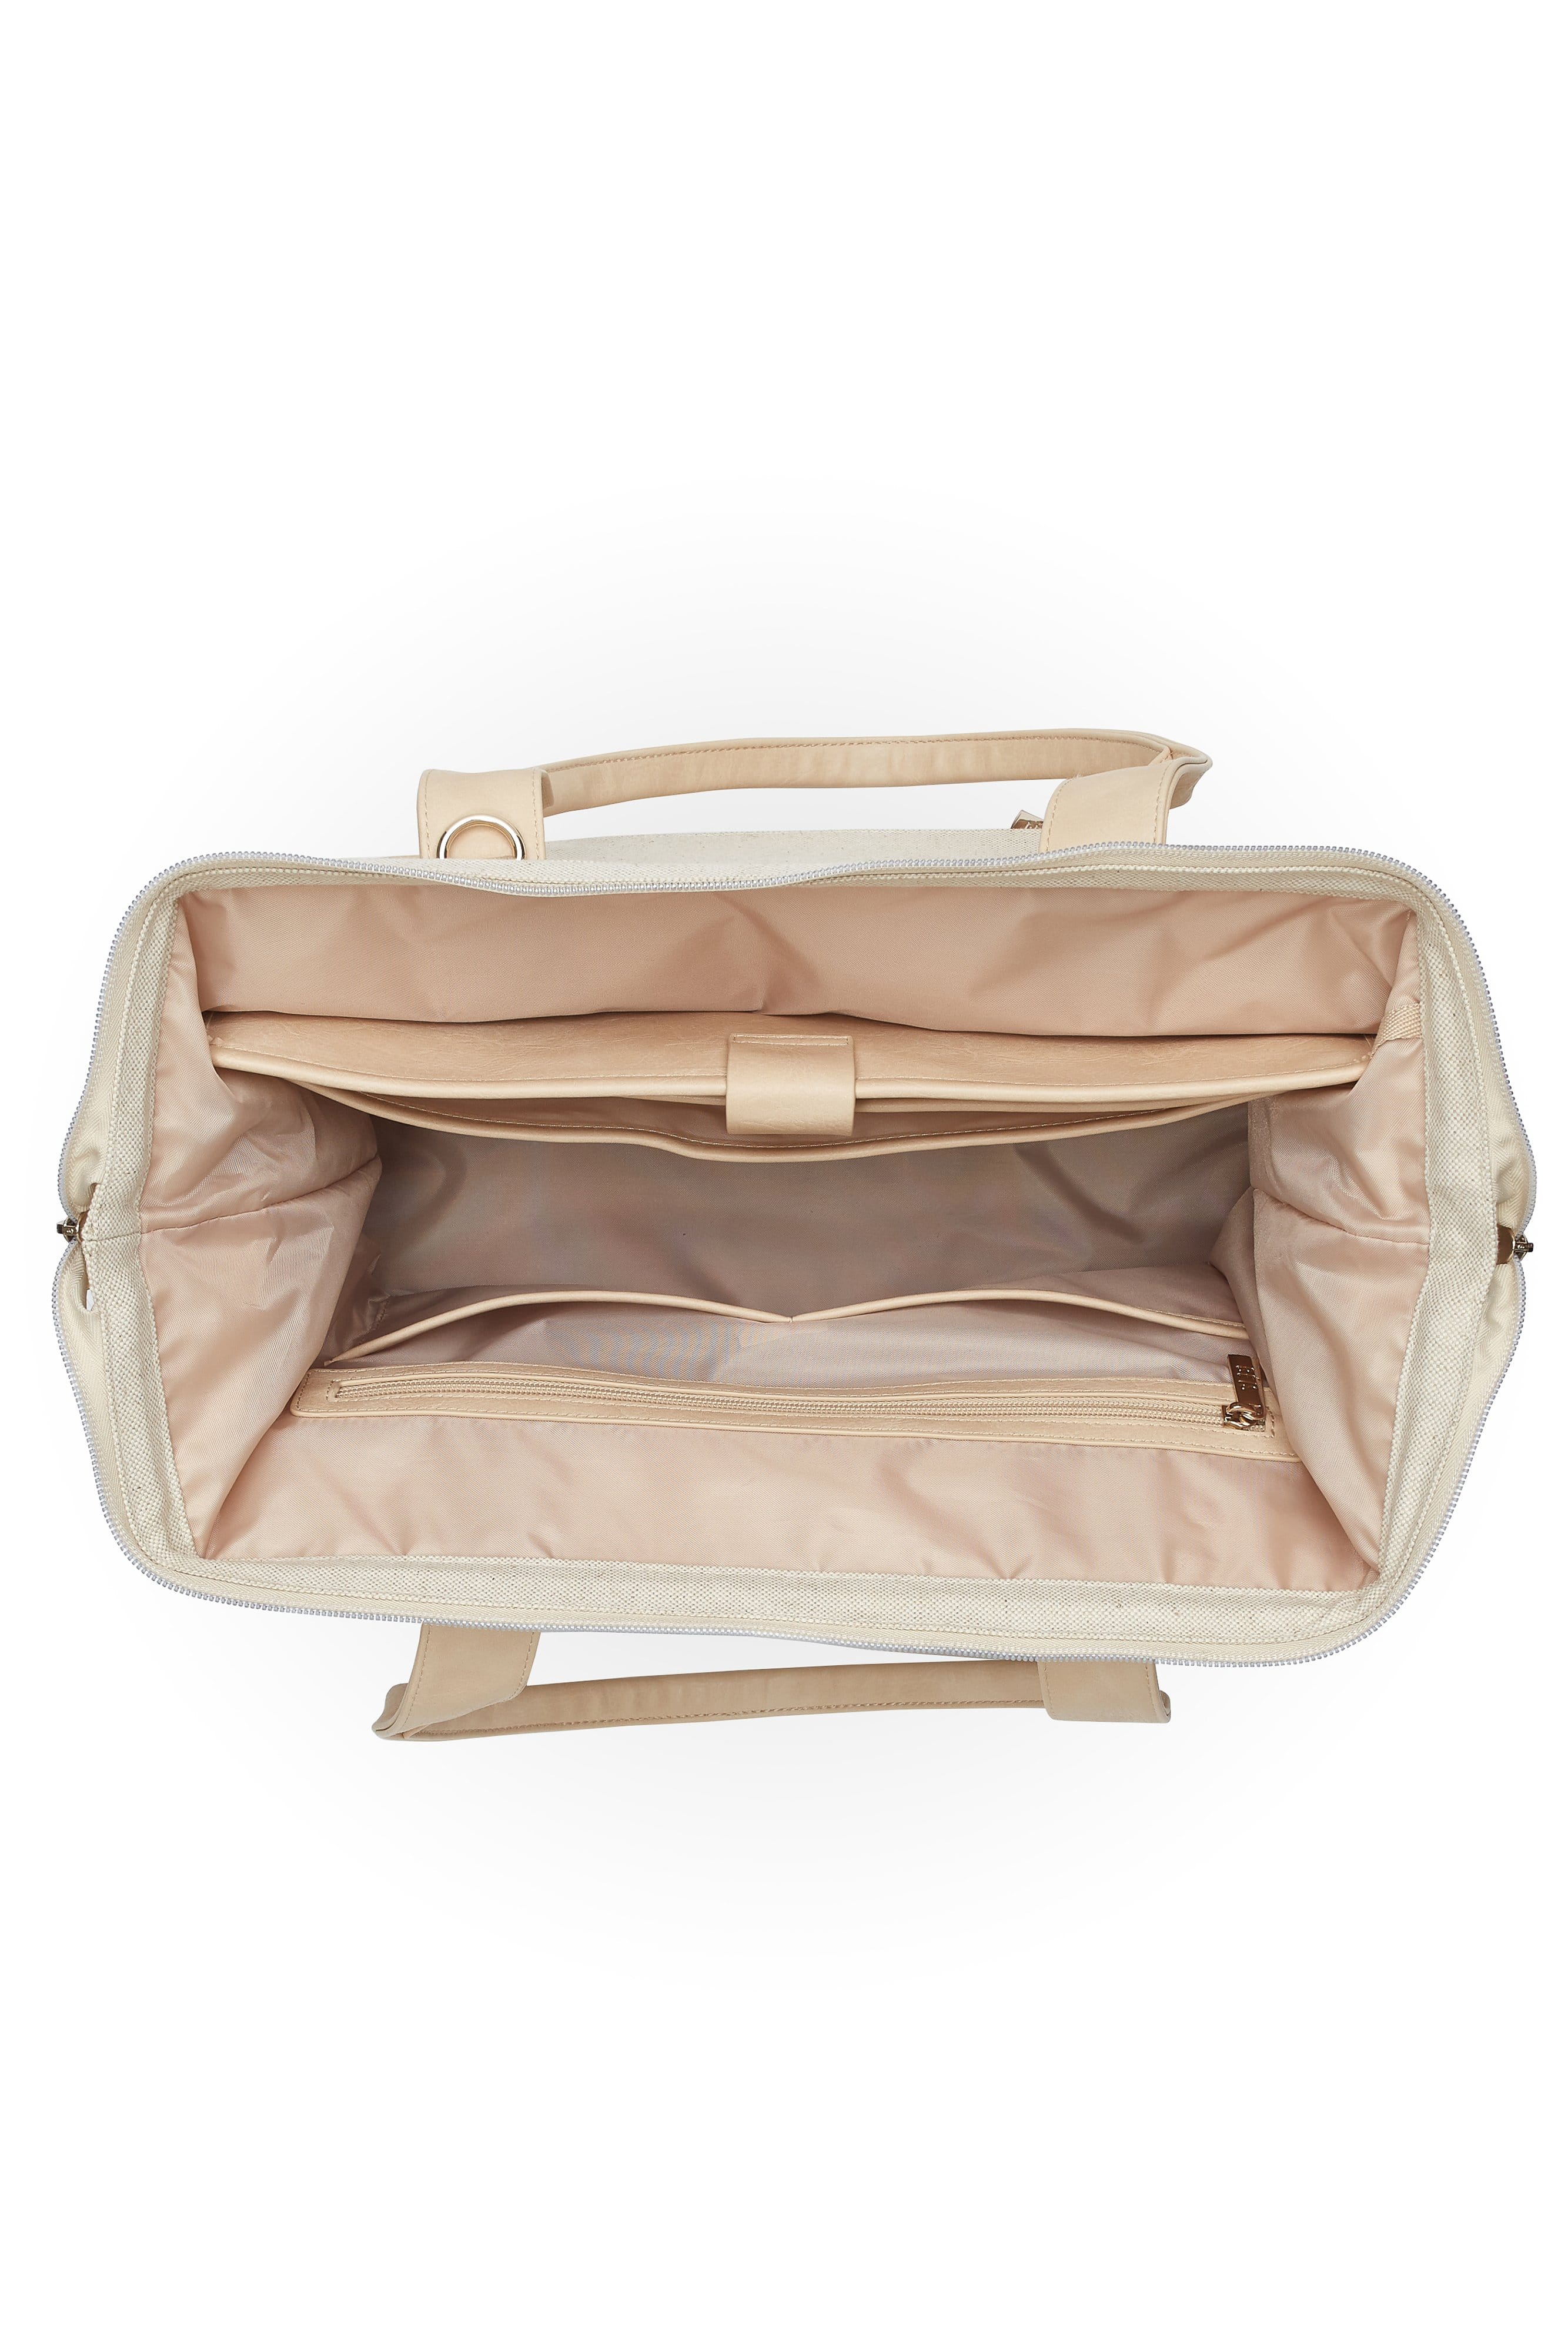 Beis Small Weekender Bag | Small weekender, Weekender bag, Bags